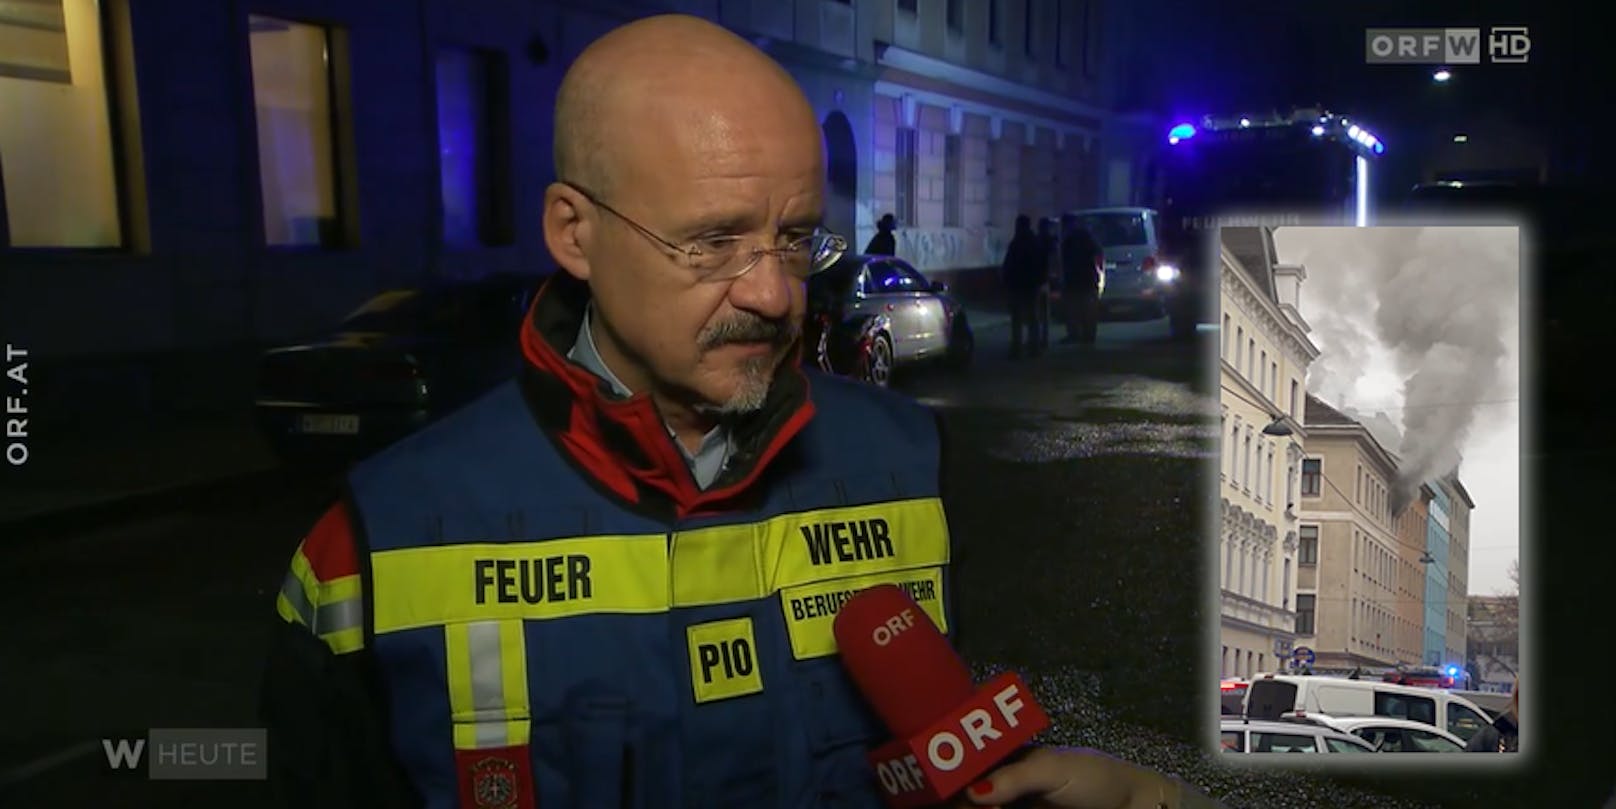 Feuerwehr-Sprecher Christian Feiler ist im ORF "not amused".